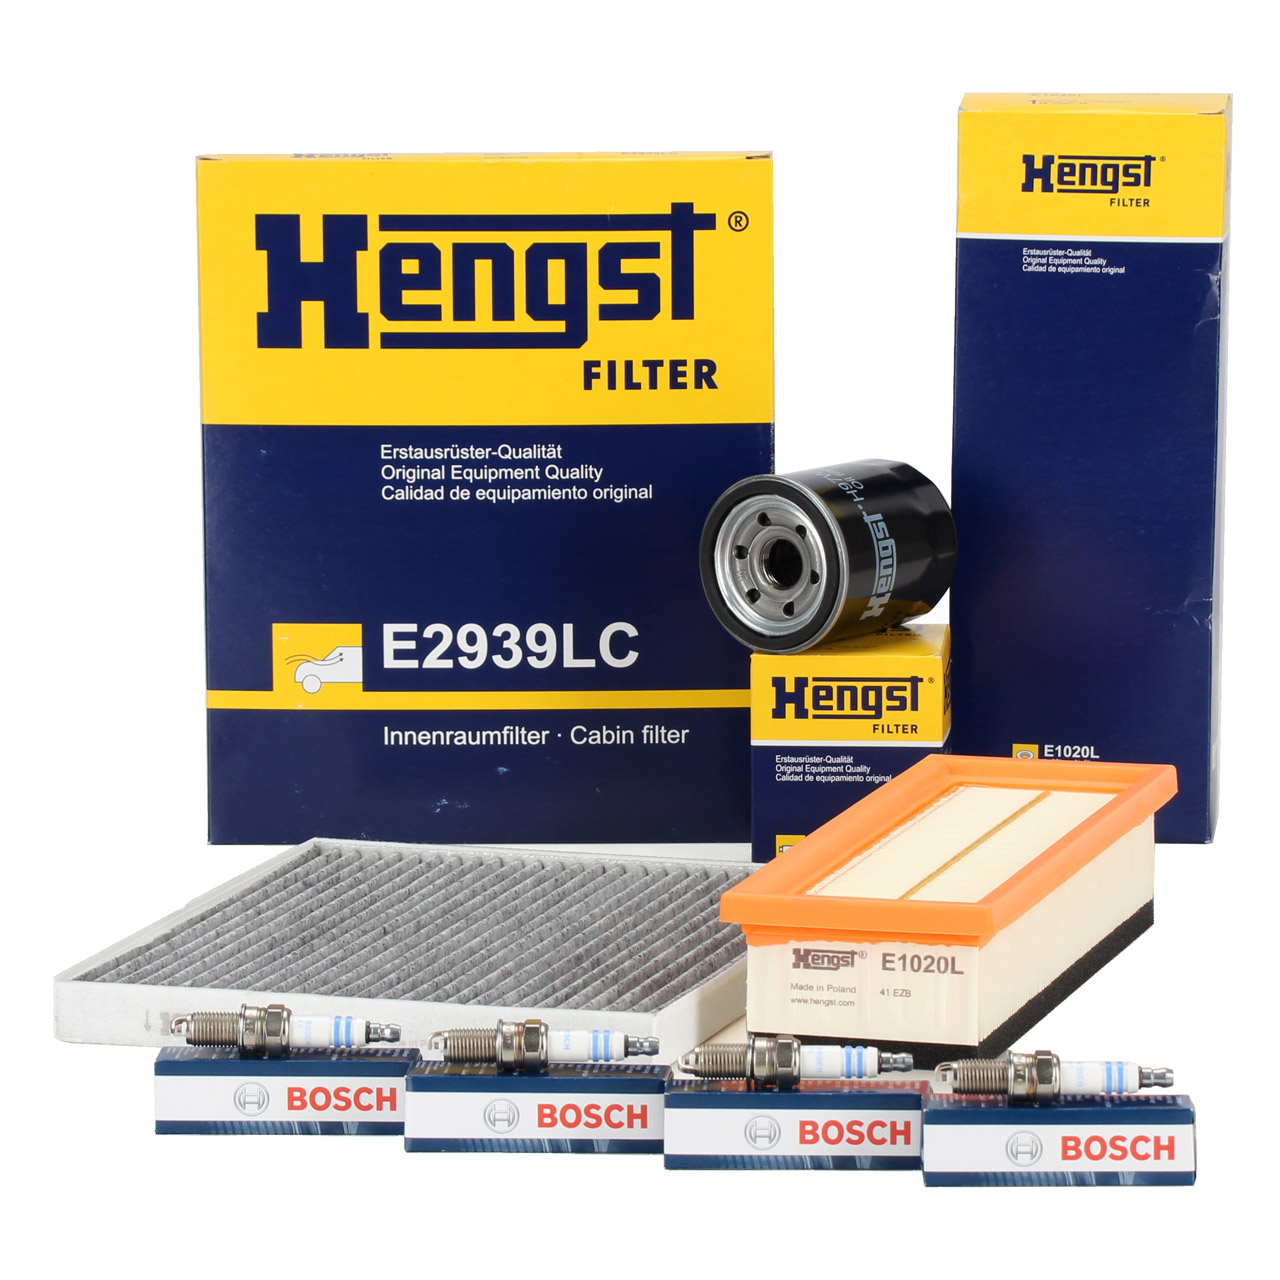 HENGST Filterset + 4x BOSCH Zündkerze FIAT Grande / Punto / Evo (199_) 1.2 1.4